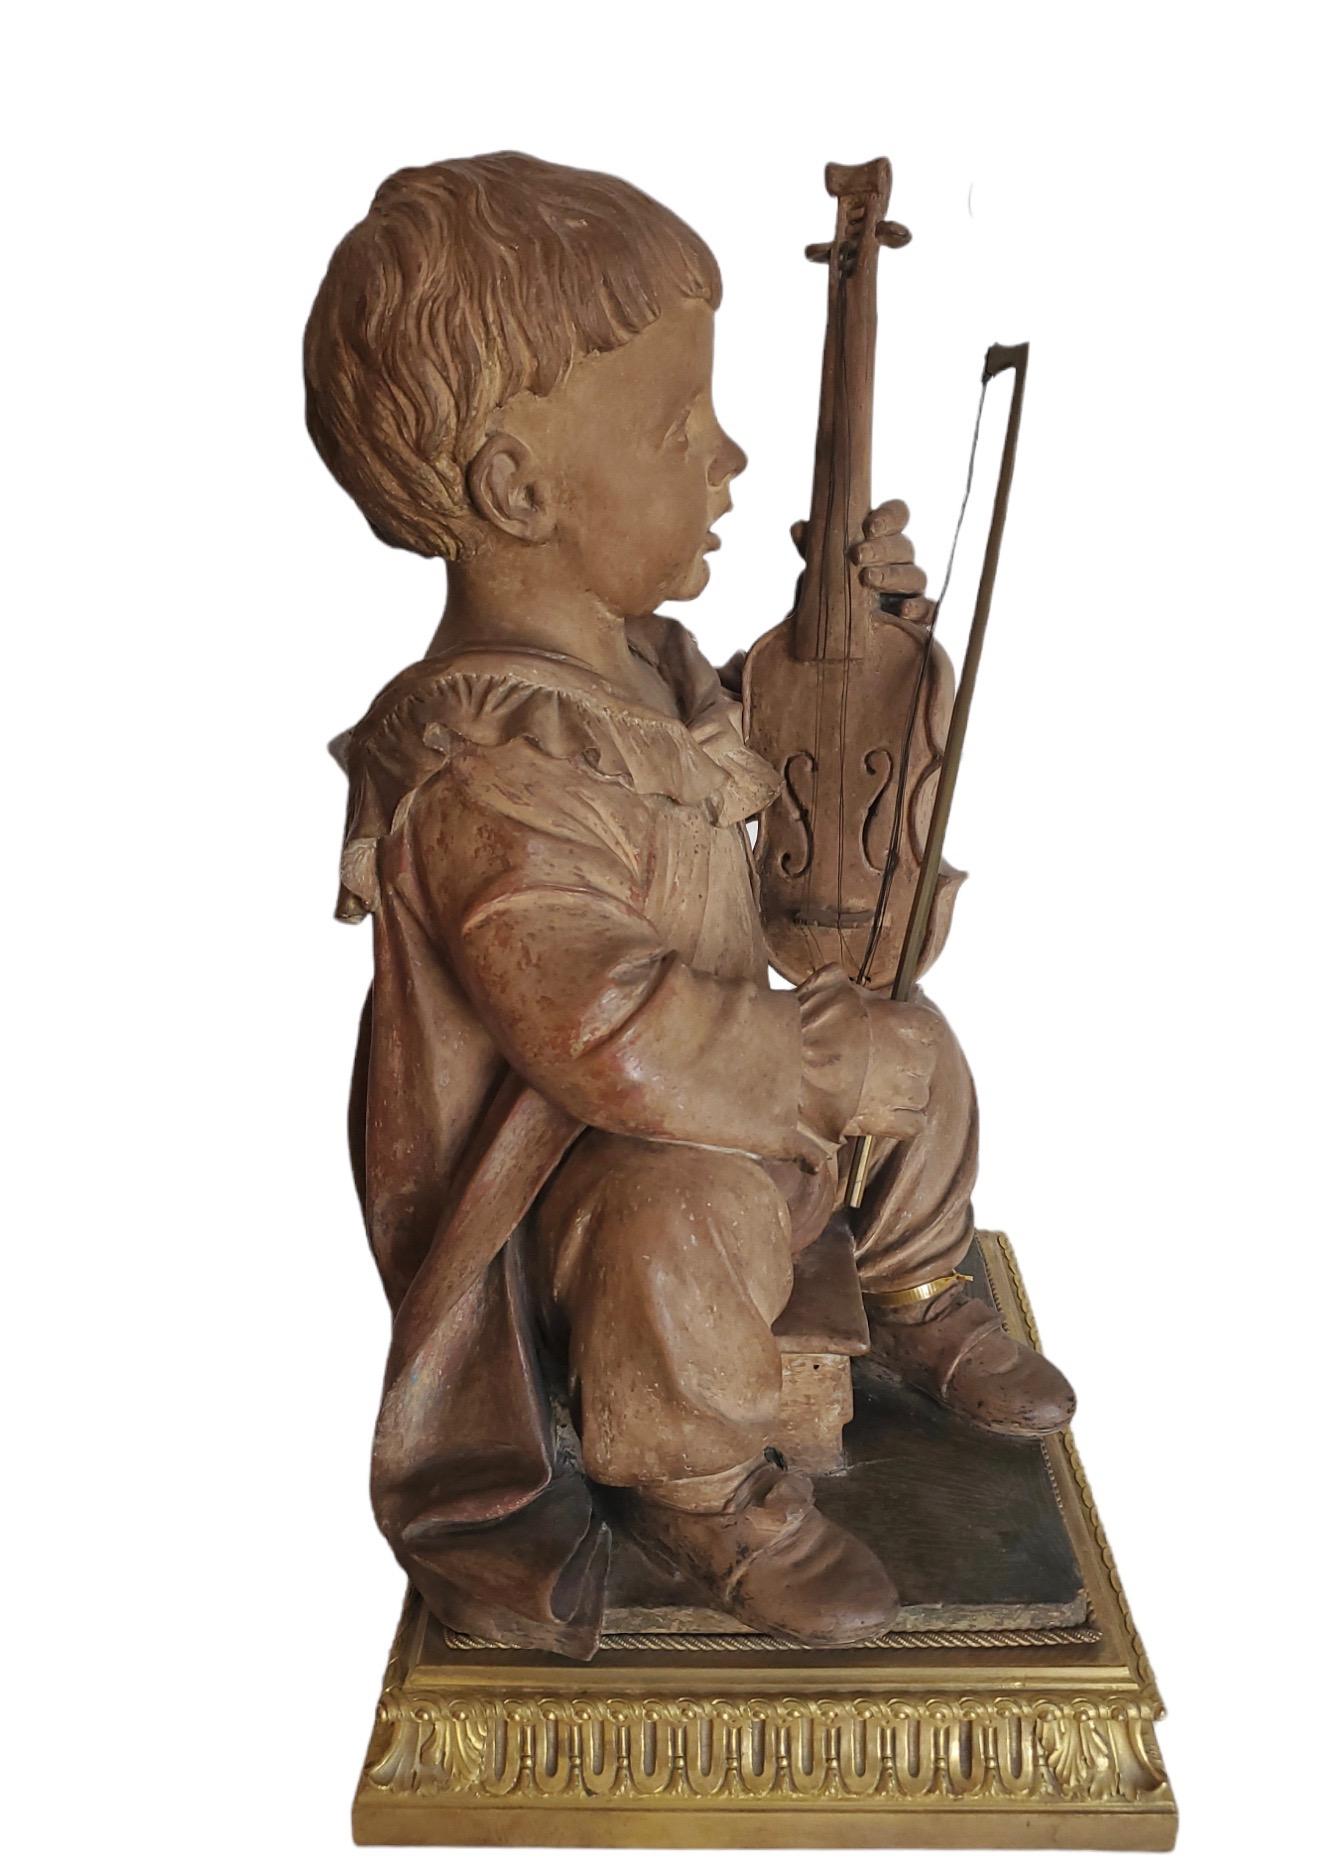 Fein modellierte Terrakottafigur eines Geige spielenden Jungen. Sie steht auf einem separaten Sockel aus französischer Dore-Bronze, fein gegossen.